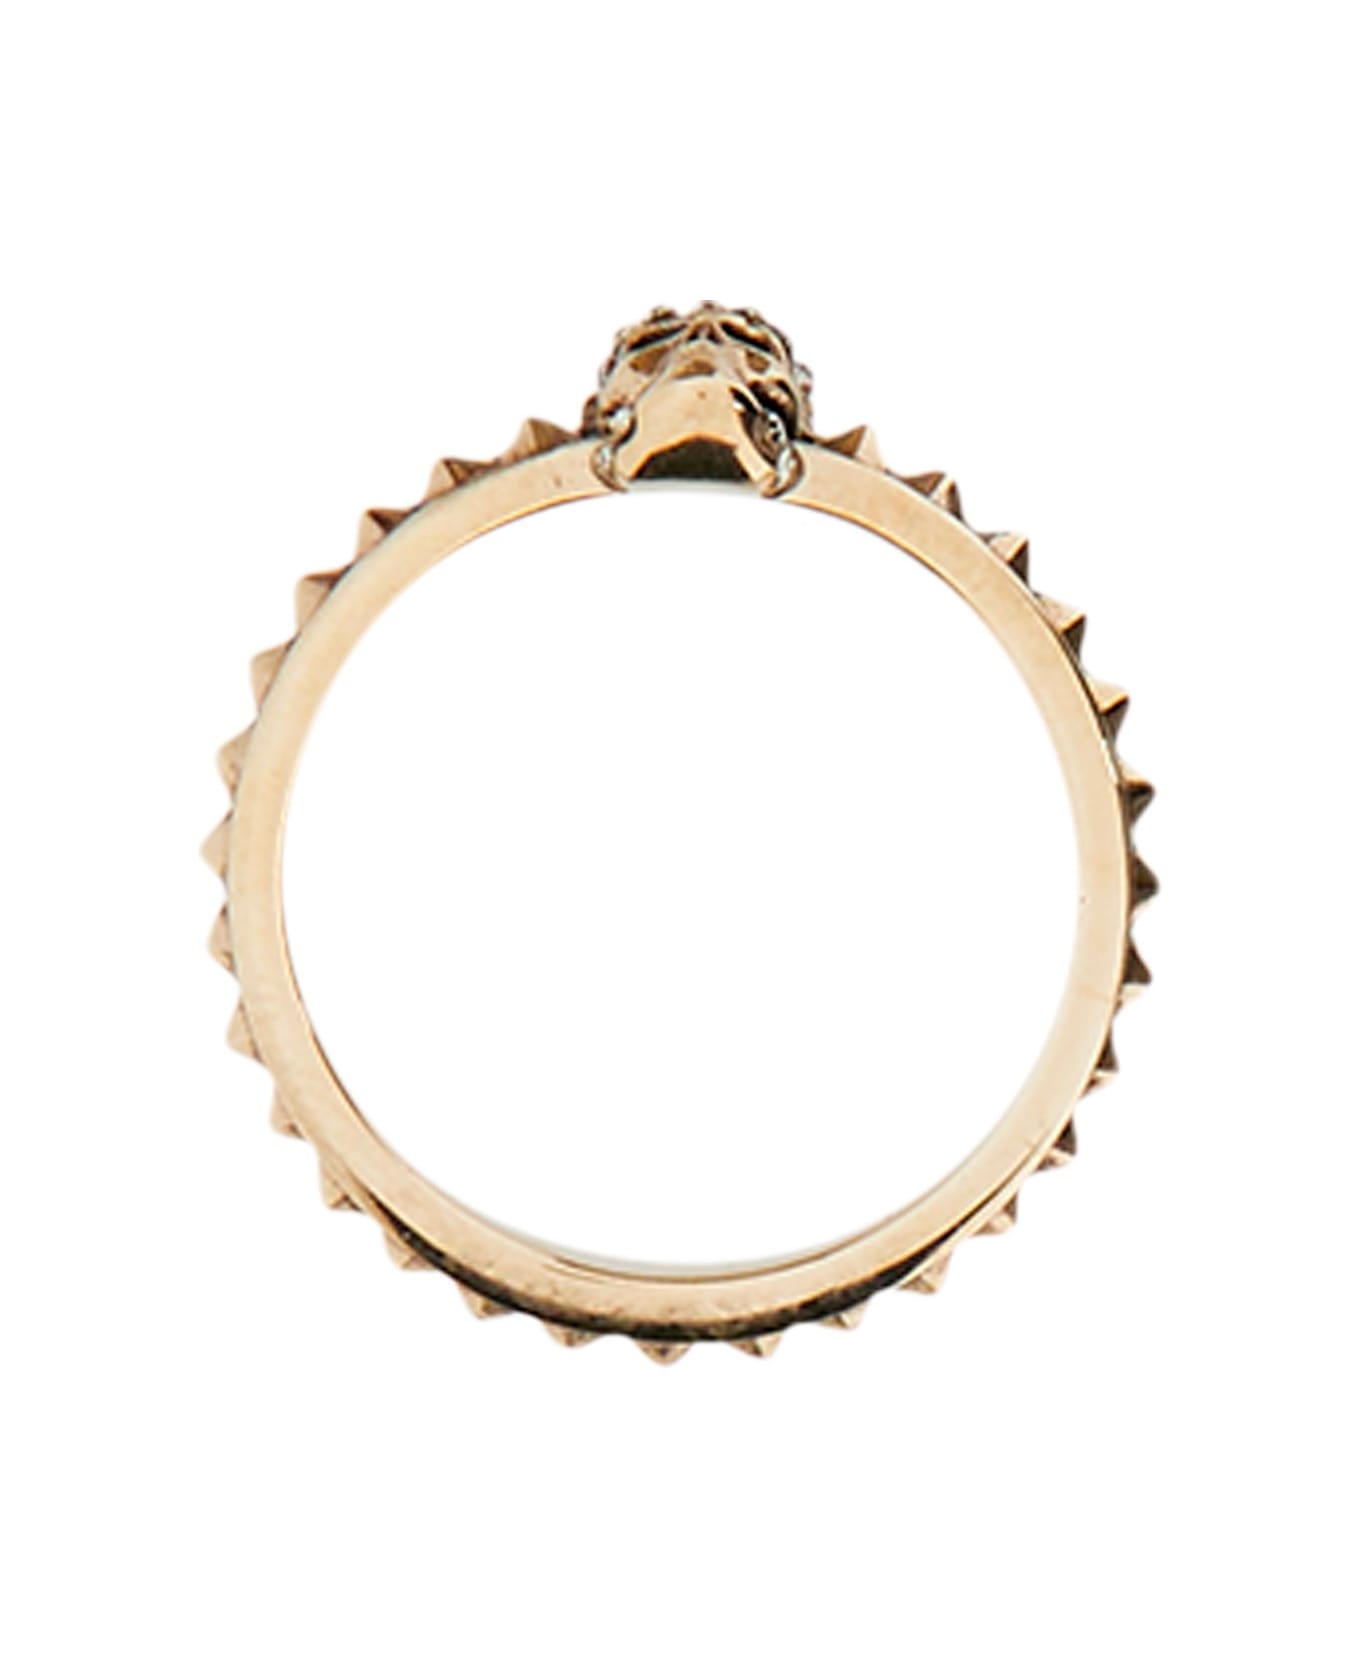 Alexander McQueen Skull Ring - Gold